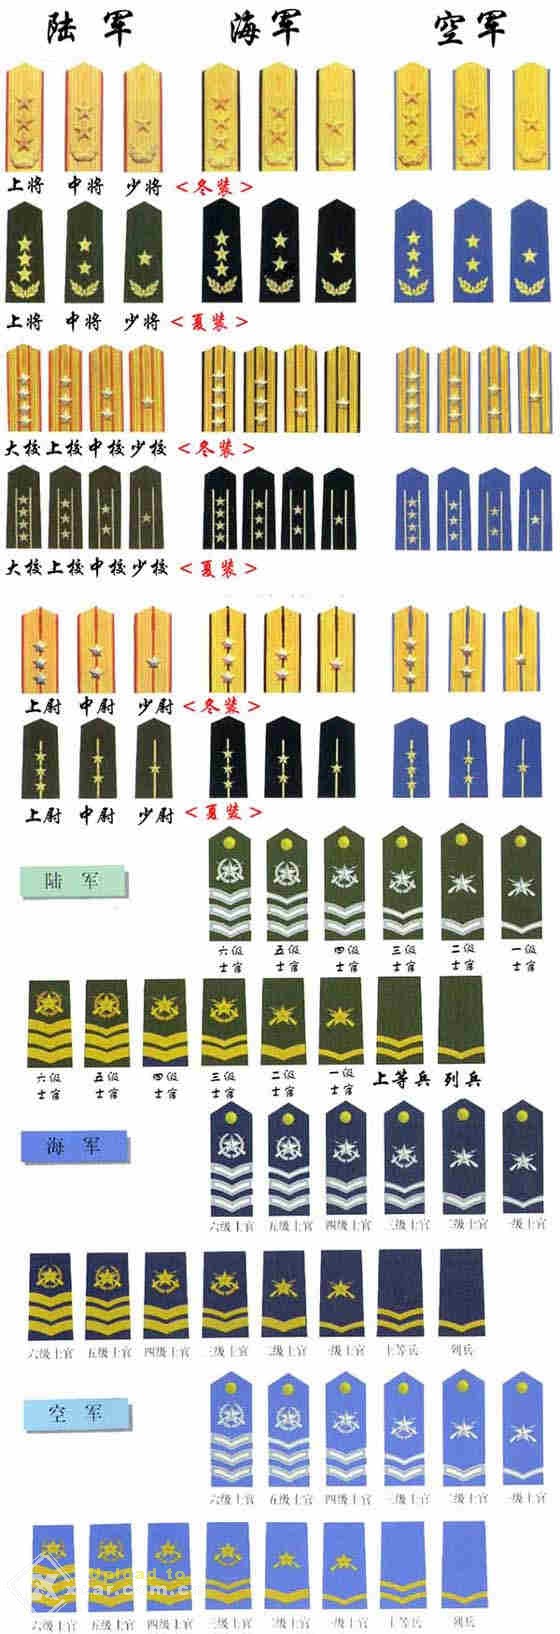 中国最高军衔图片